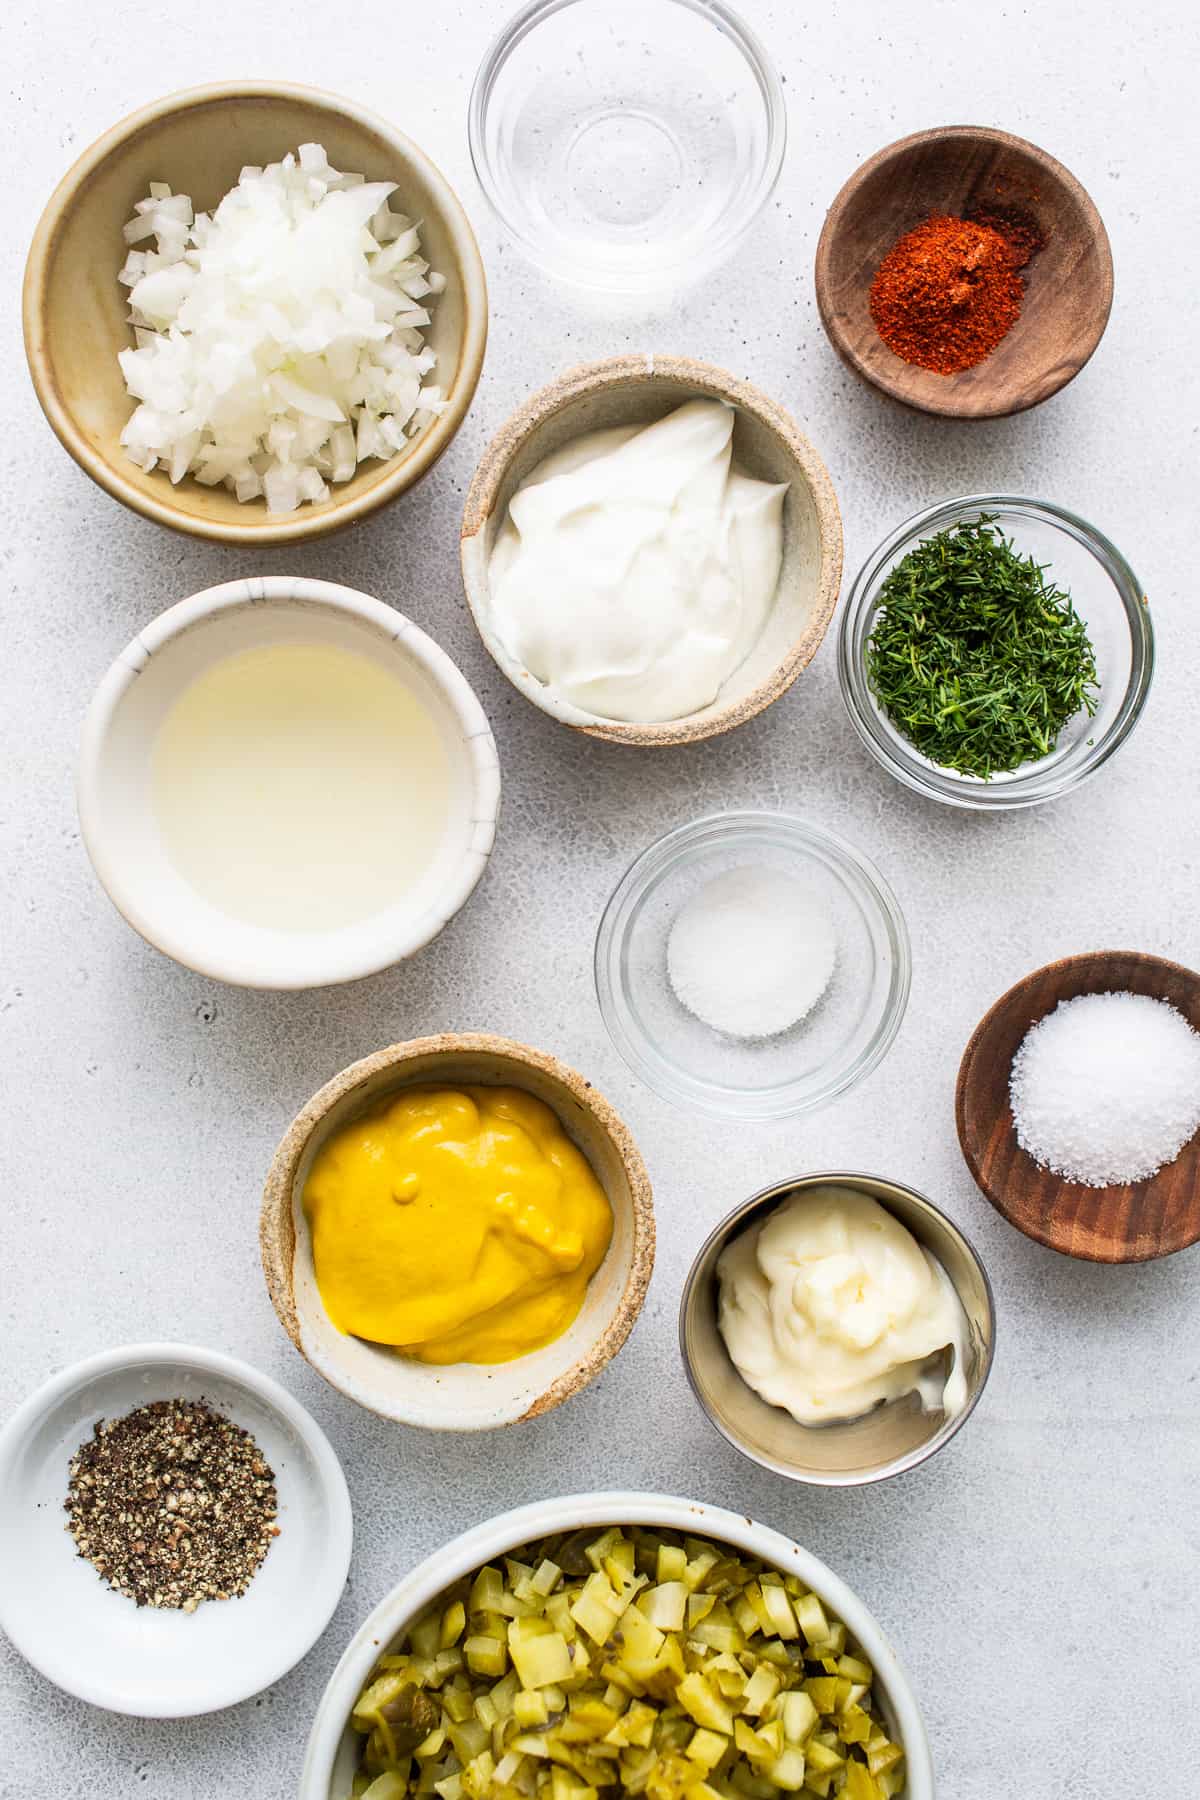 Ingredients for deviled egg salad in bowls.